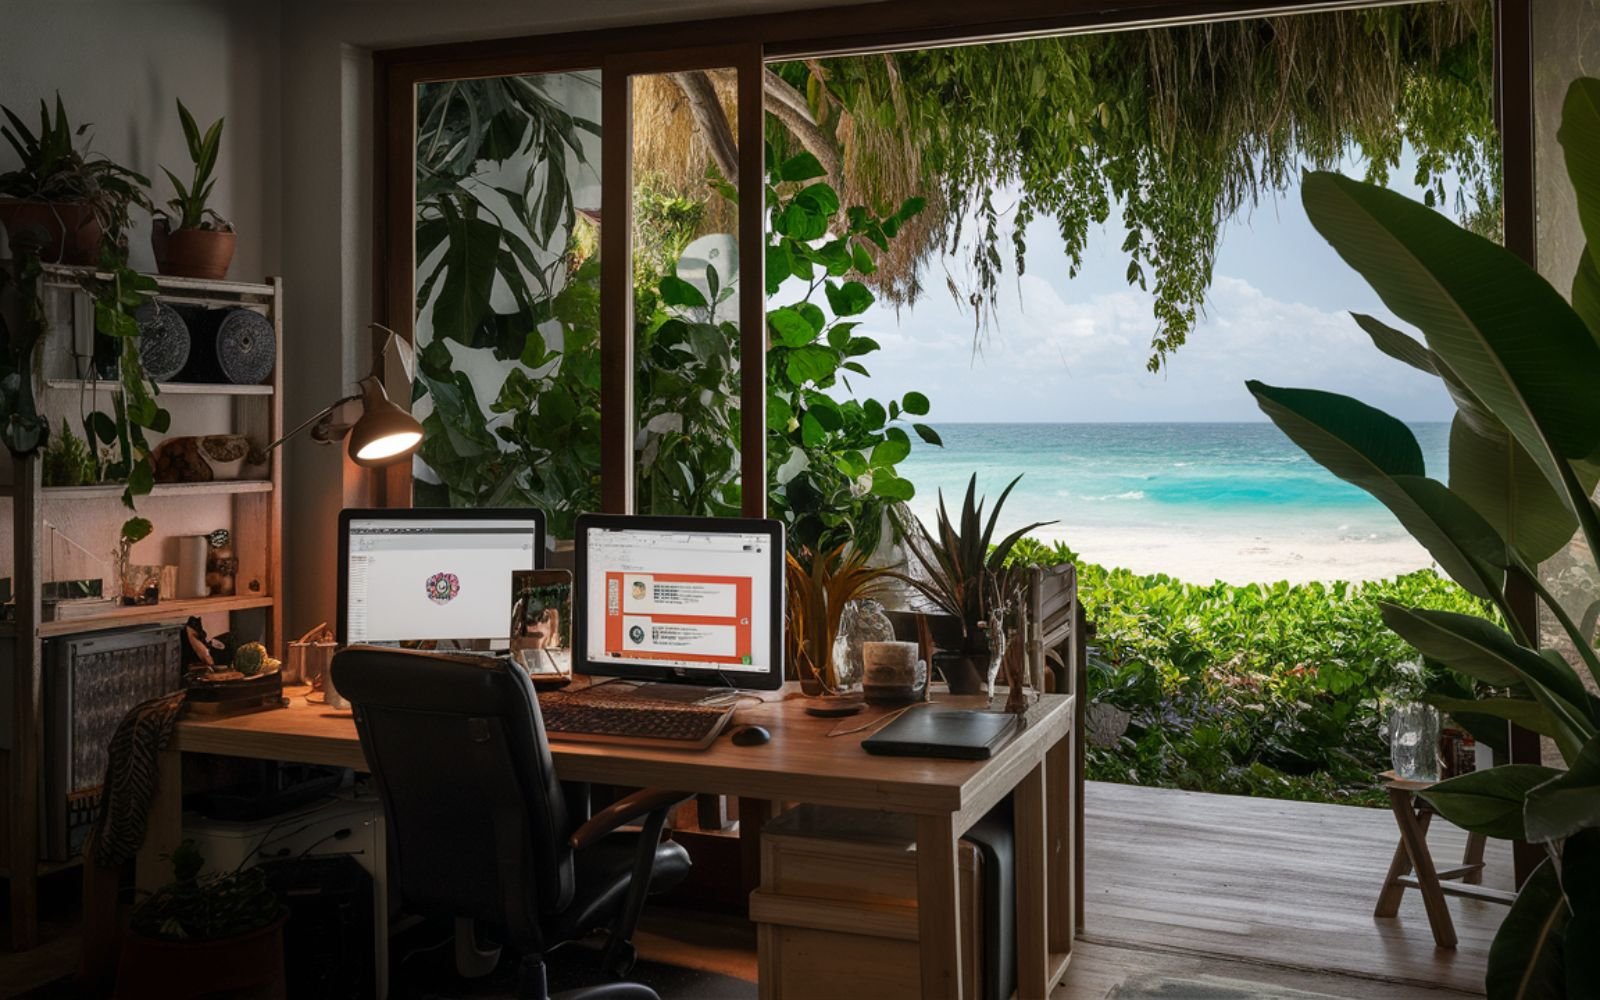 bureau d'un web designer Dr Page - Olivier Dufour avec ordinateurs, plante exotique avec une fenêtre donnant sur une plage paradisiaque, végétation luxuriante,